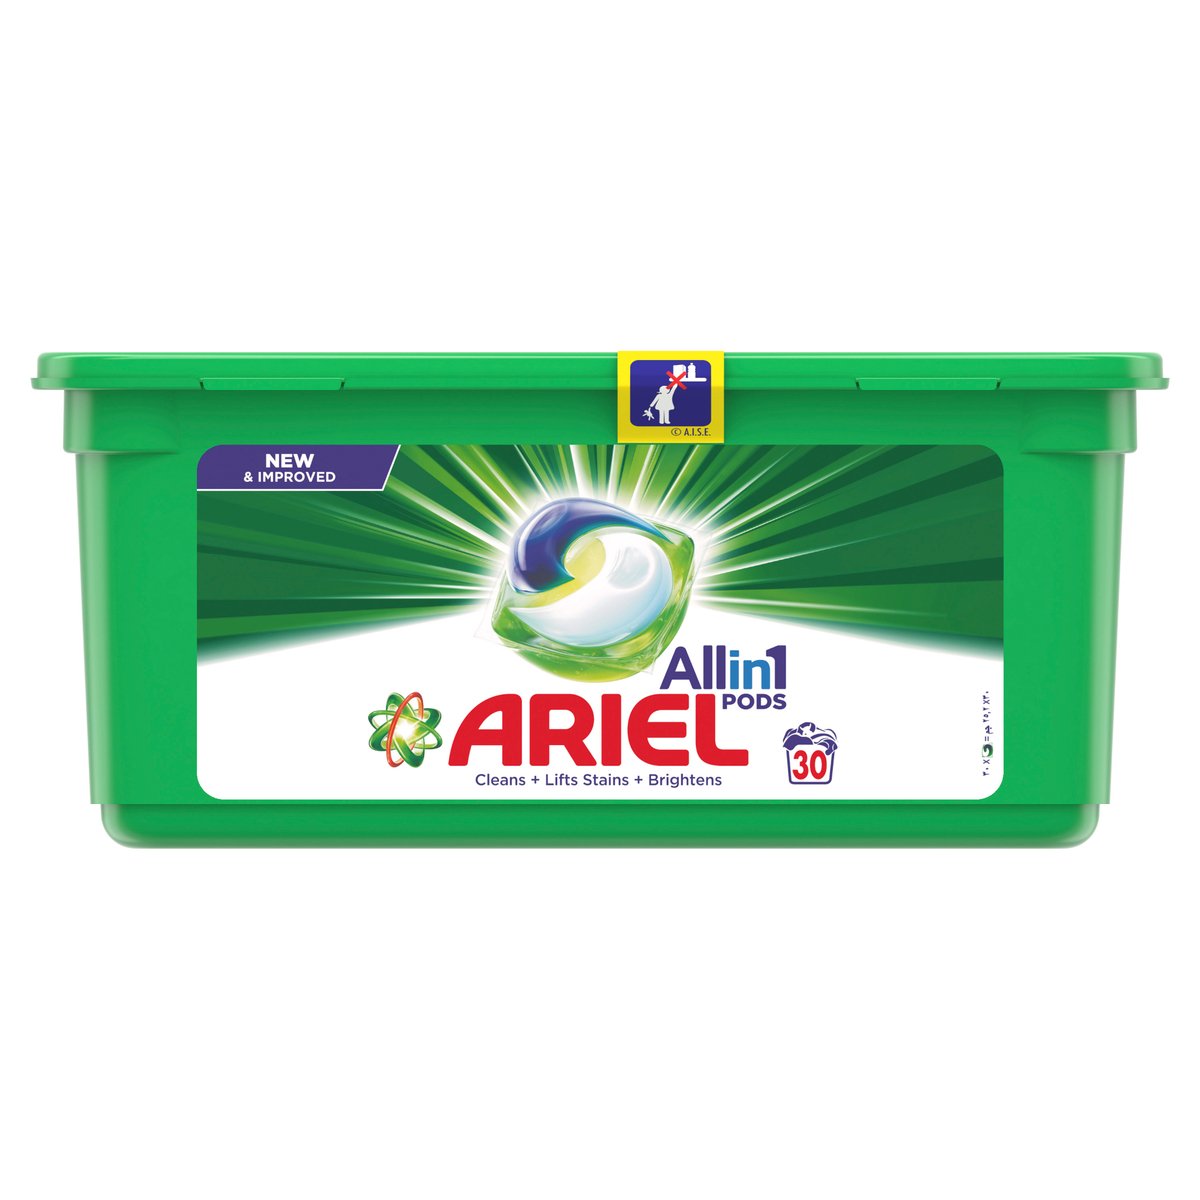 Ariel All in 1 Pods Original Scent Liquid Detergent Capsules 30 pcs